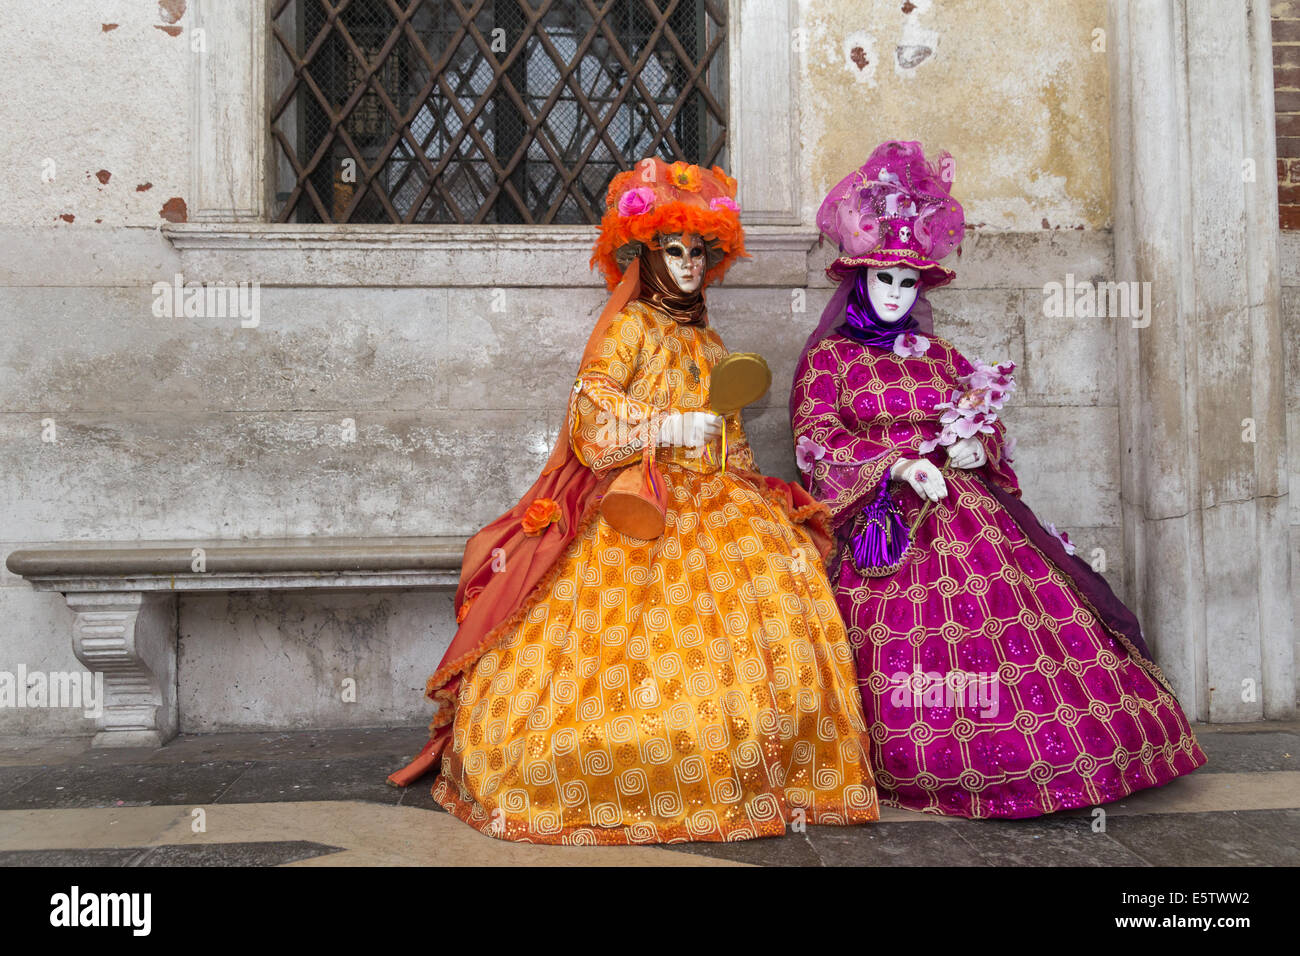 Les gens costumés sur la Piazza San Marco au cours de Carnaval de Venise Banque D'Images